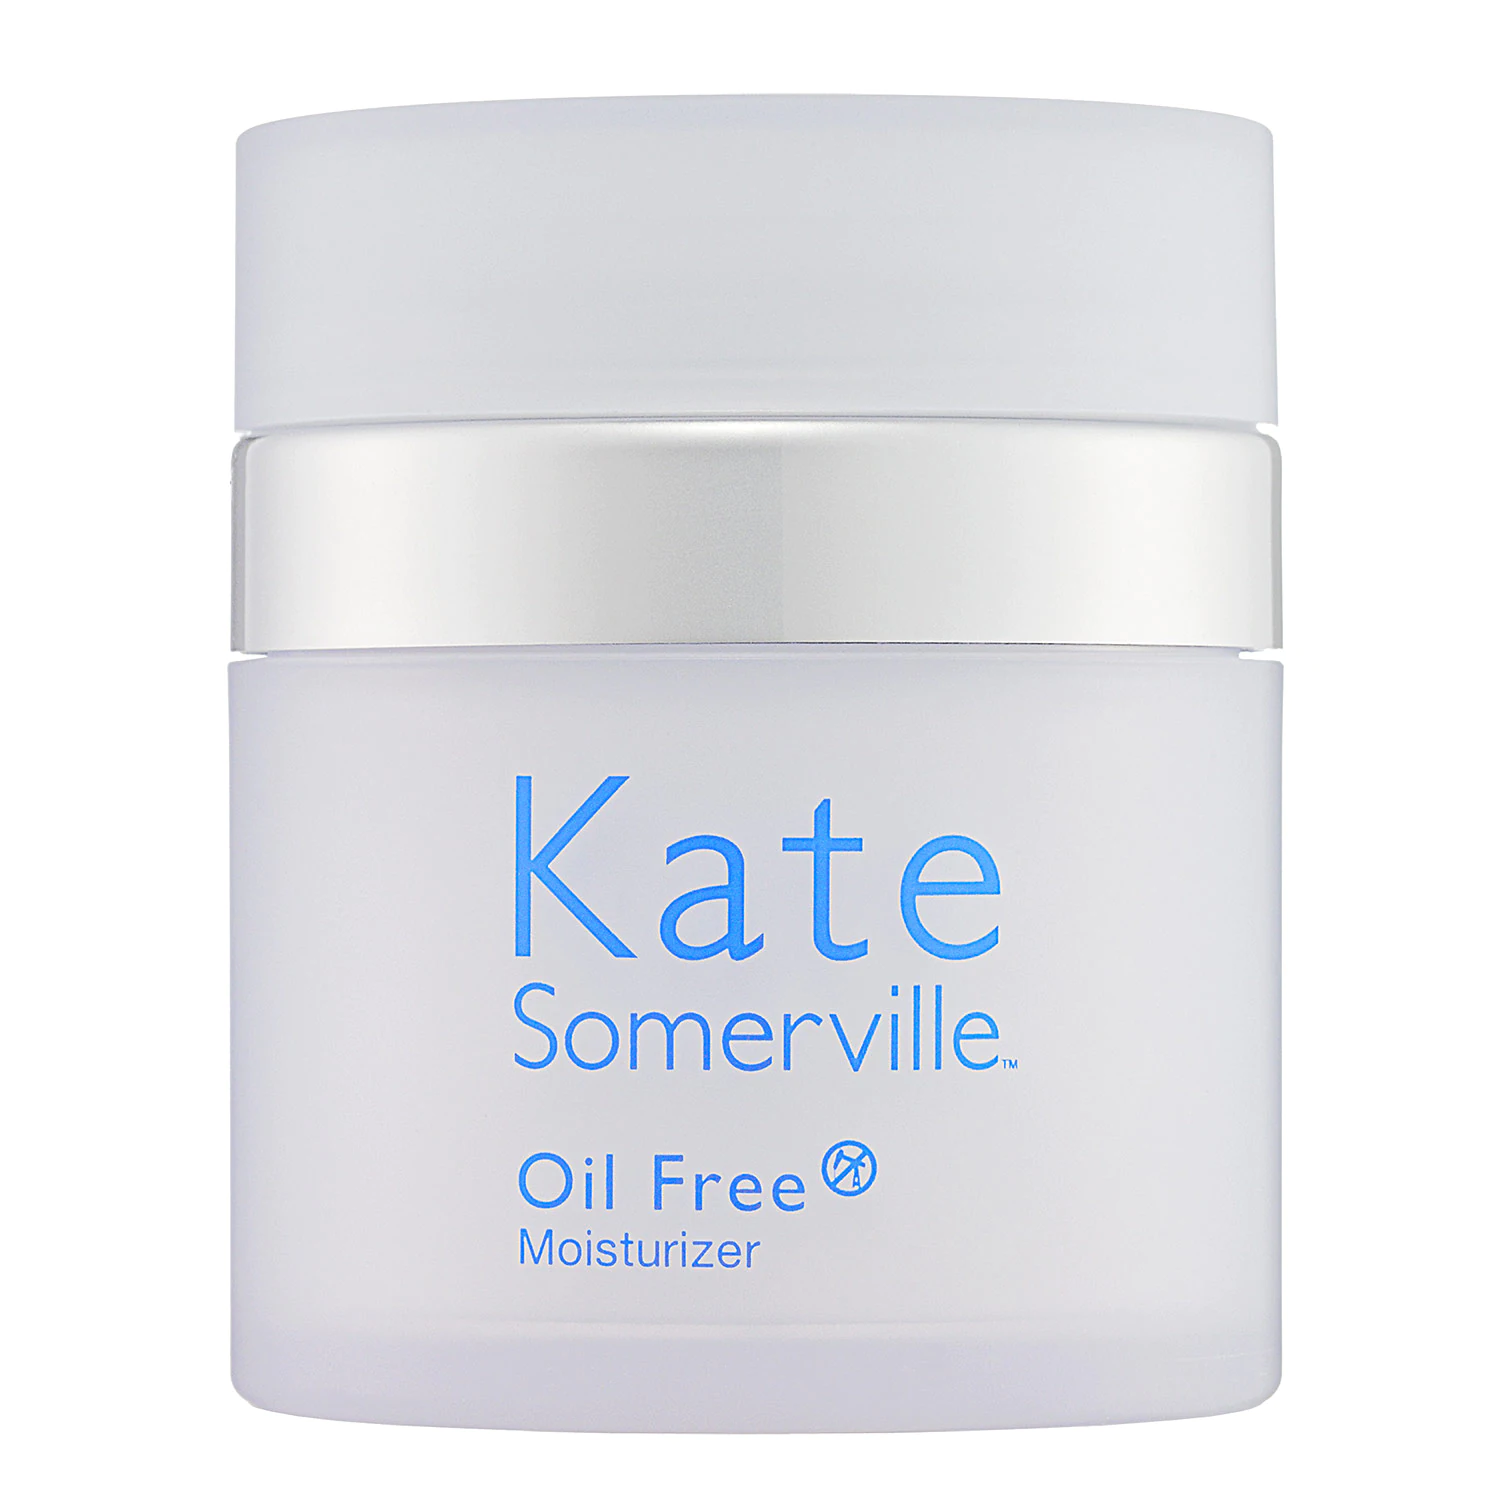 Kate Somerville Oil Free cream